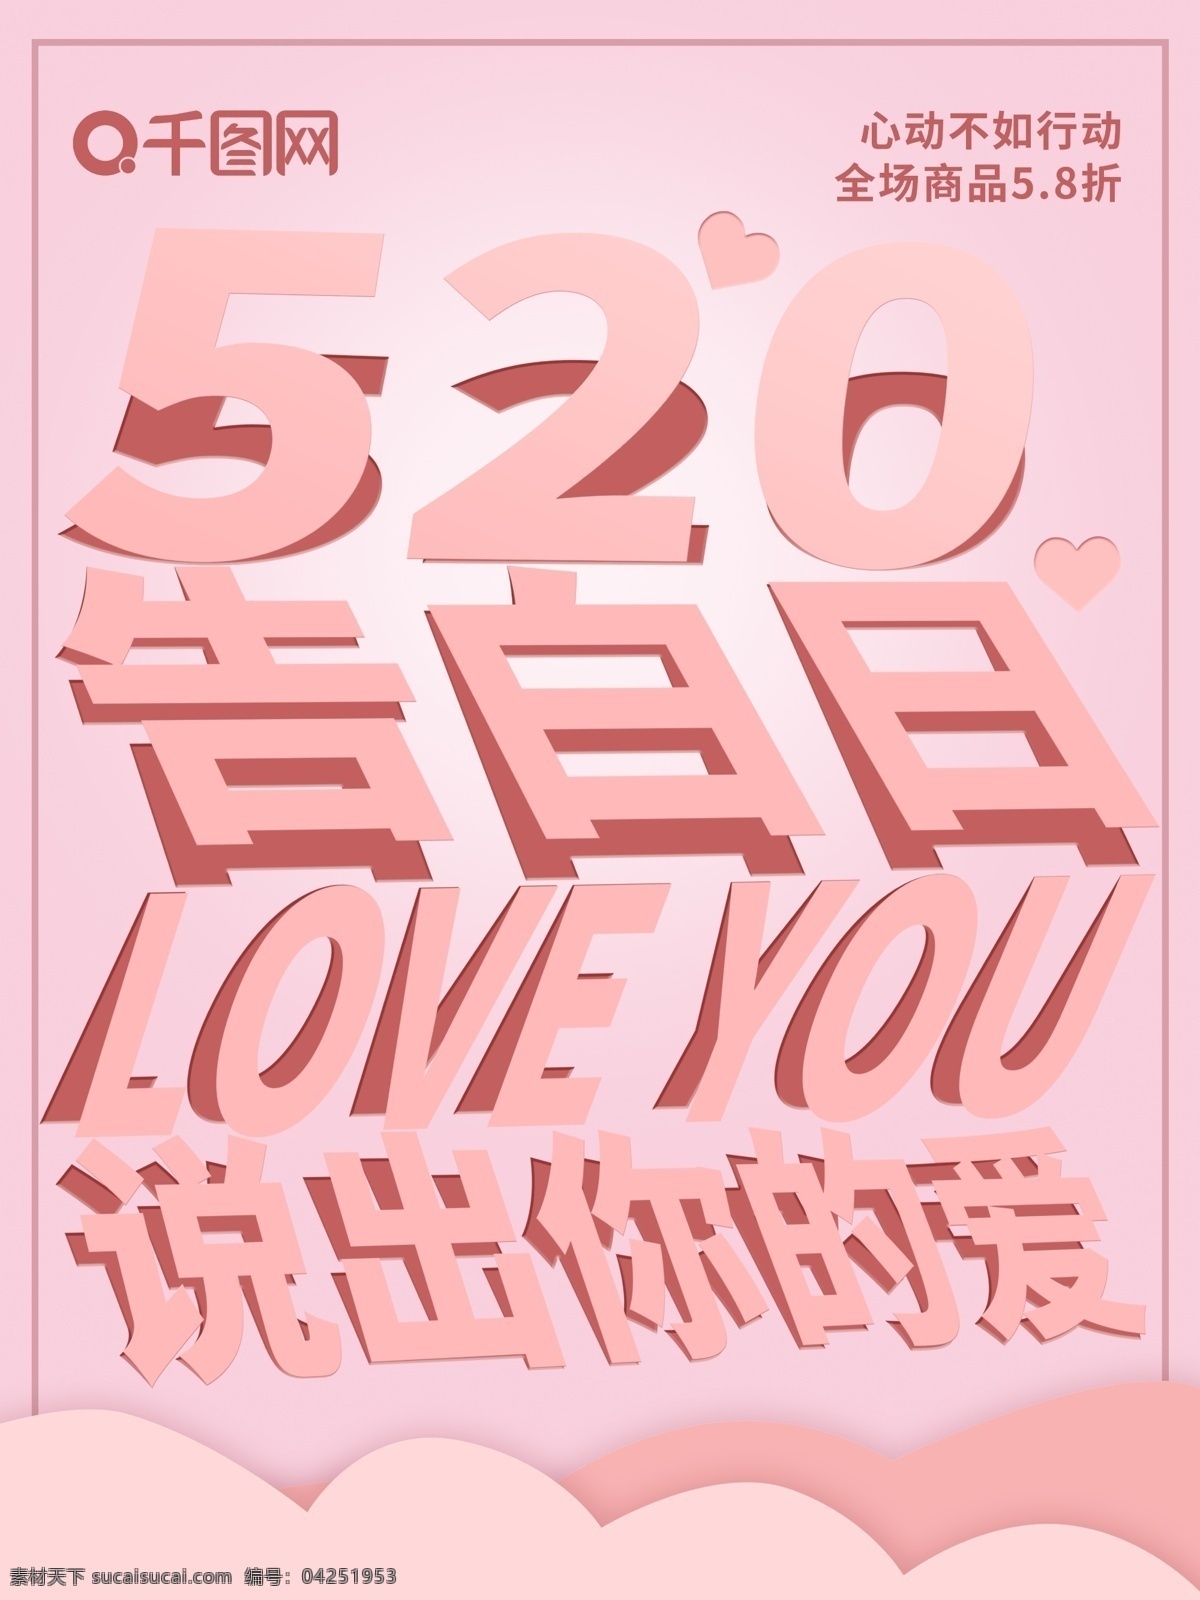 粉色 浪漫 折纸 风 520 告白 节 促销 海报 告白节 折纸风 爱情 情人节